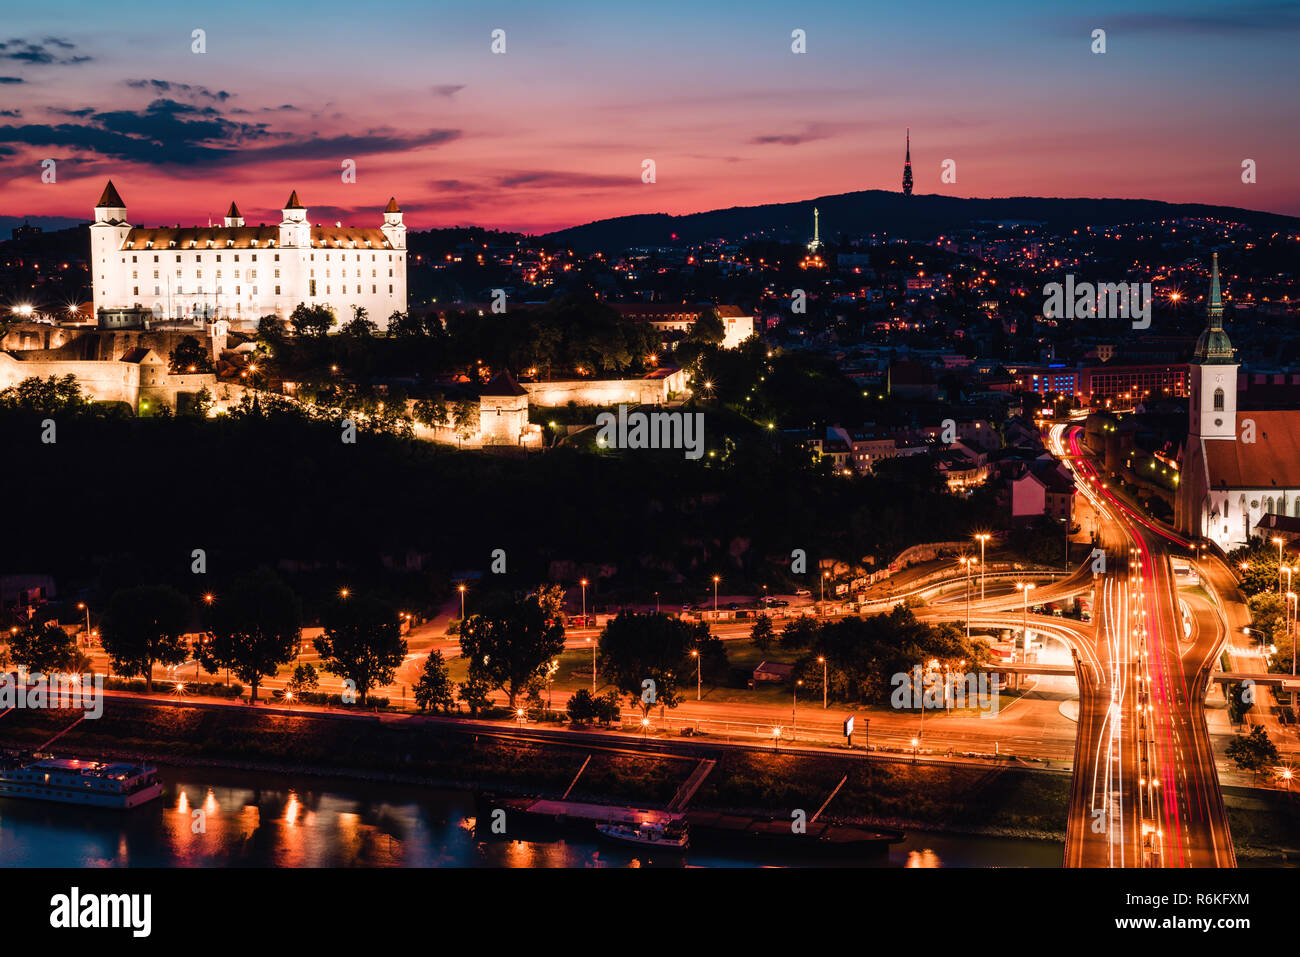 Serata panorama della città di Bratislava appena dopo il tramonto con un bellissimo cielo rosa e illuminazione notturna. Una lunga esposizione foto. Foto Stock